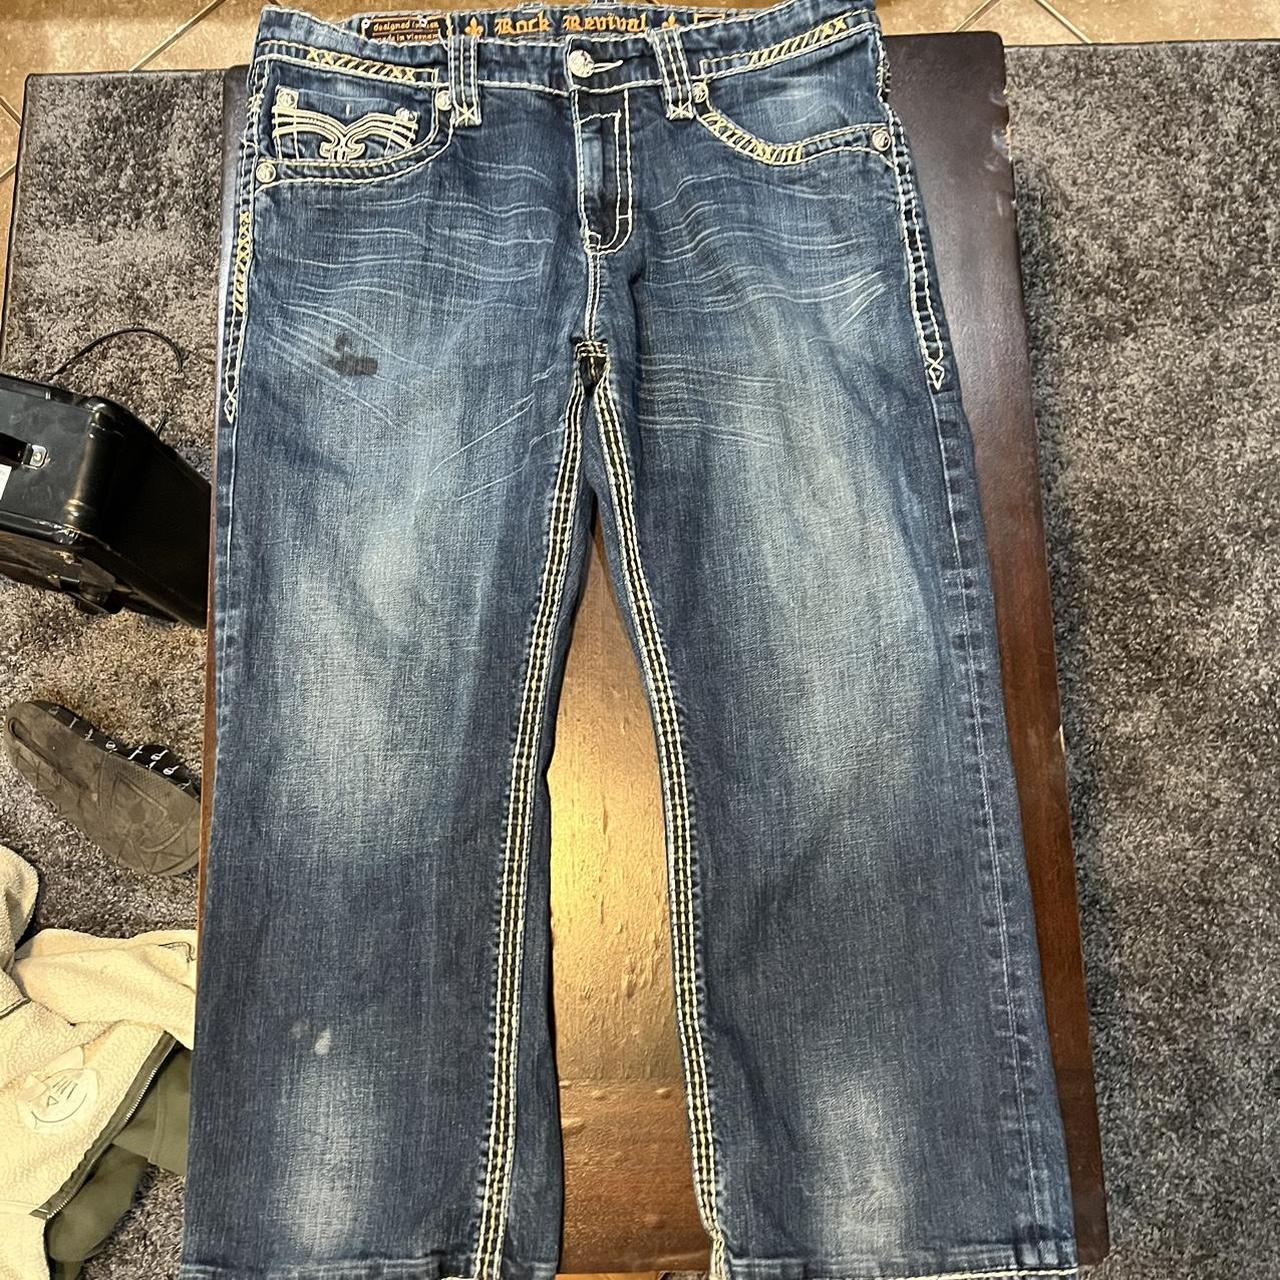 Baggy Rock revival jeans Baggy fit size 38 Leg... - Depop